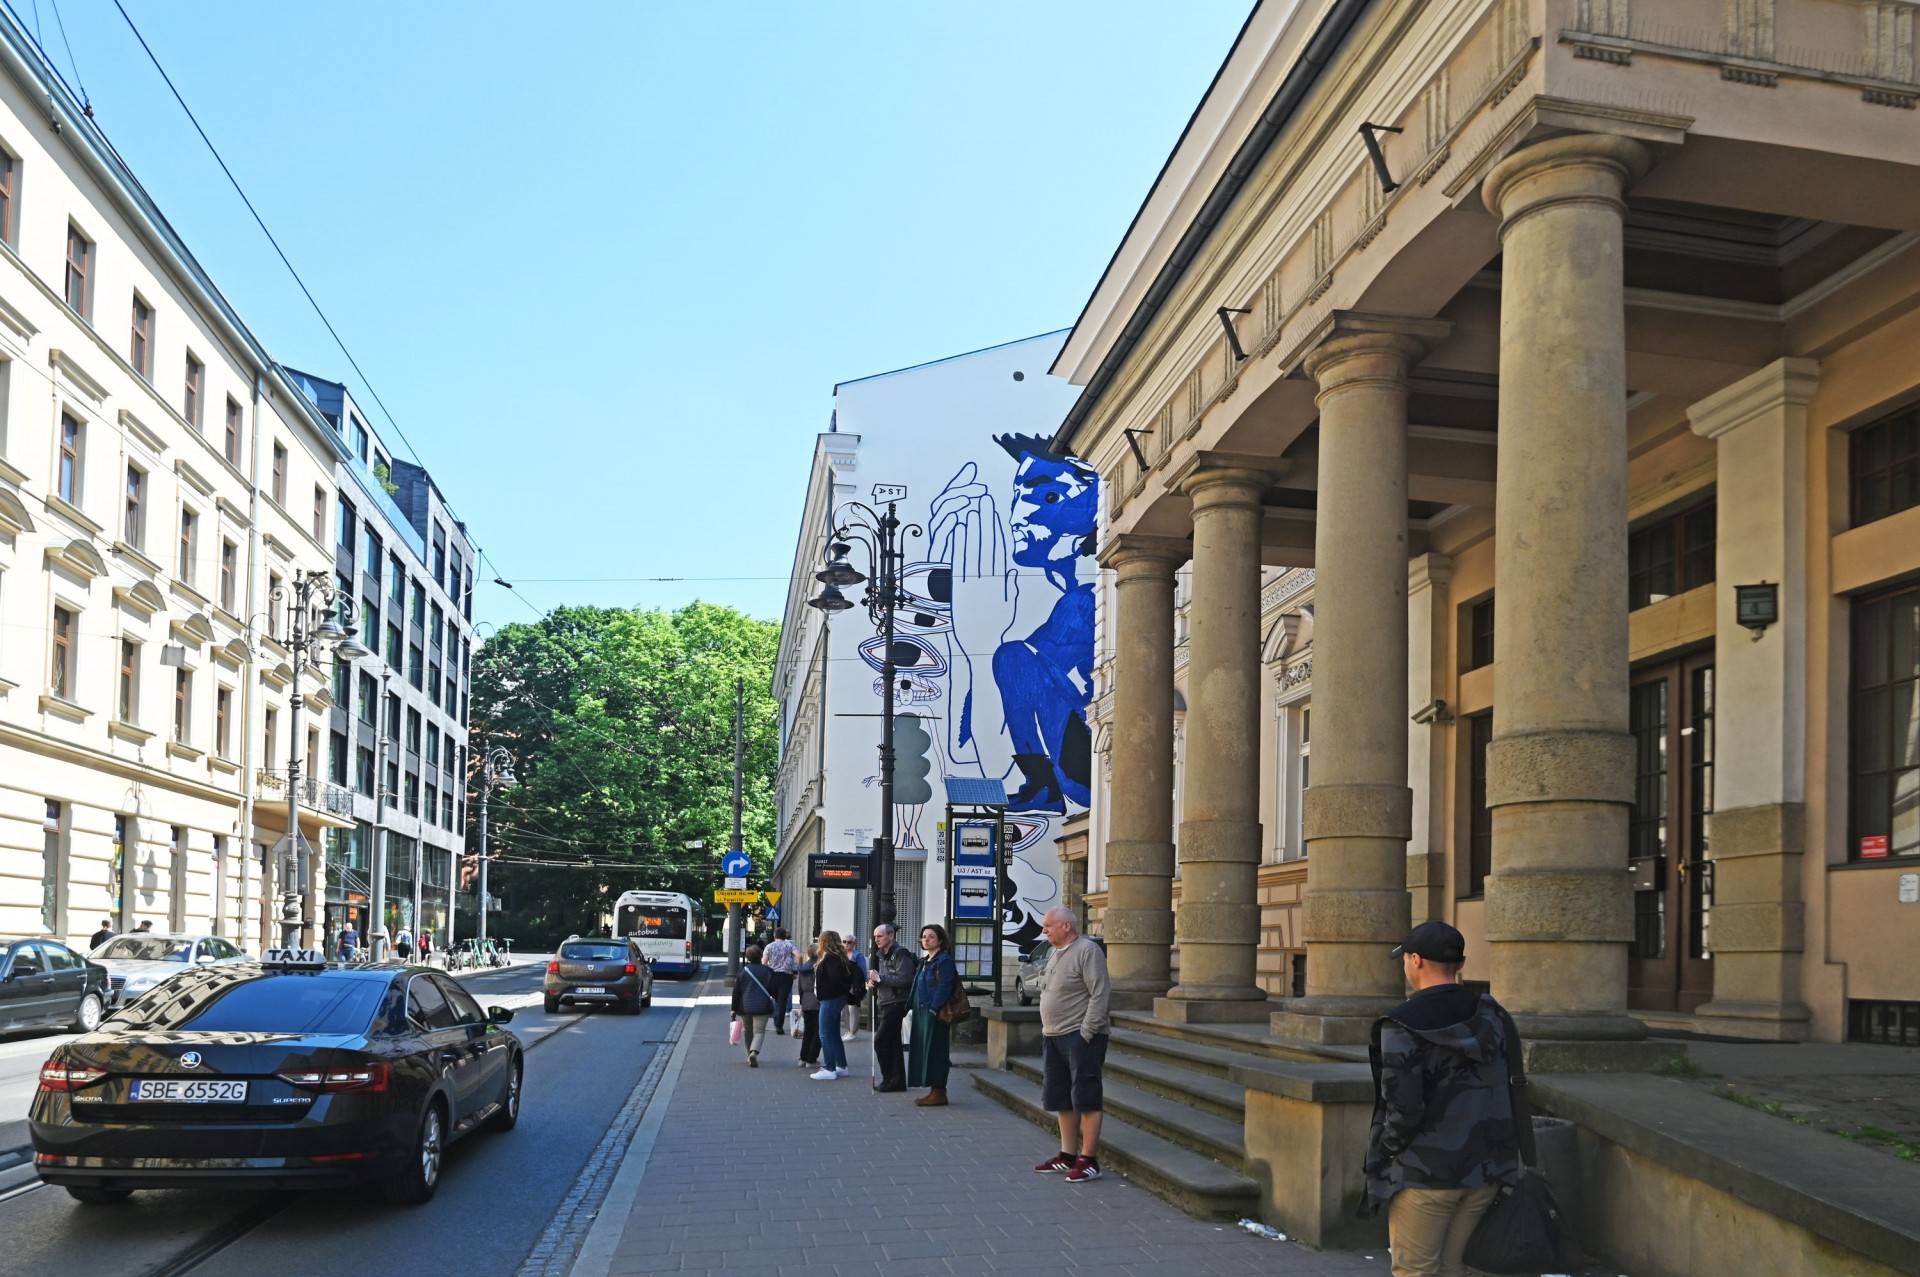 Nowe murale w centrum Krakowa, inspiracją był Wyspiański